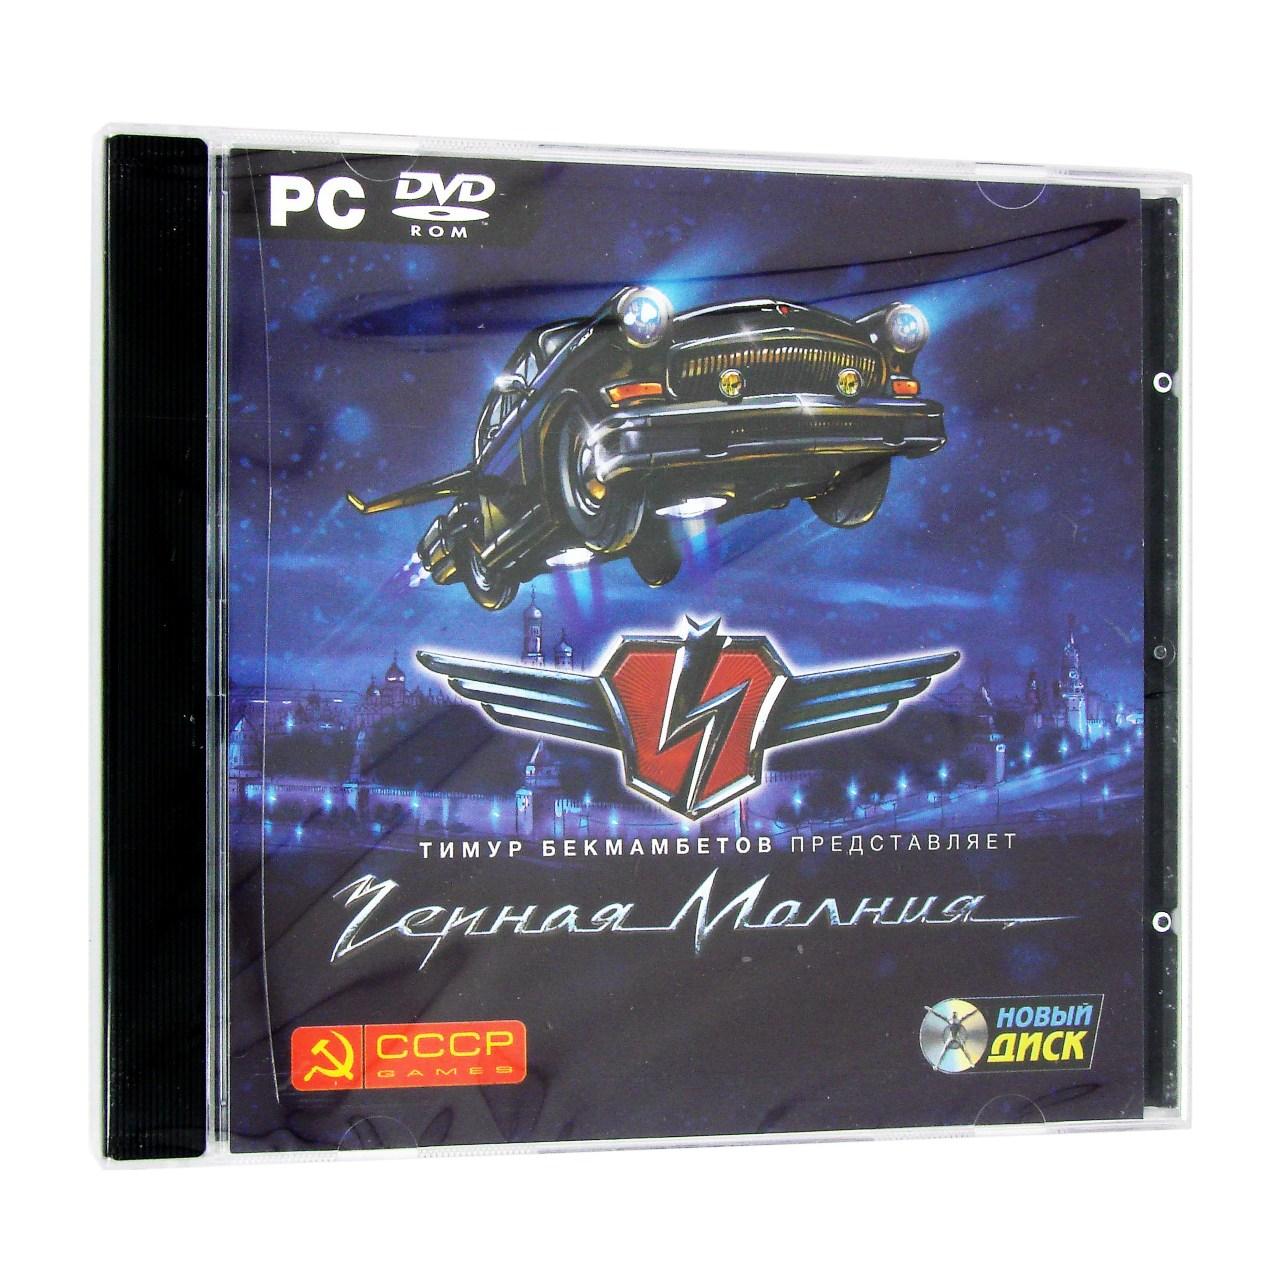 Компьютерный компакт-диск Чёрная молния (ПК), фирма "Новый диск", 1DVD